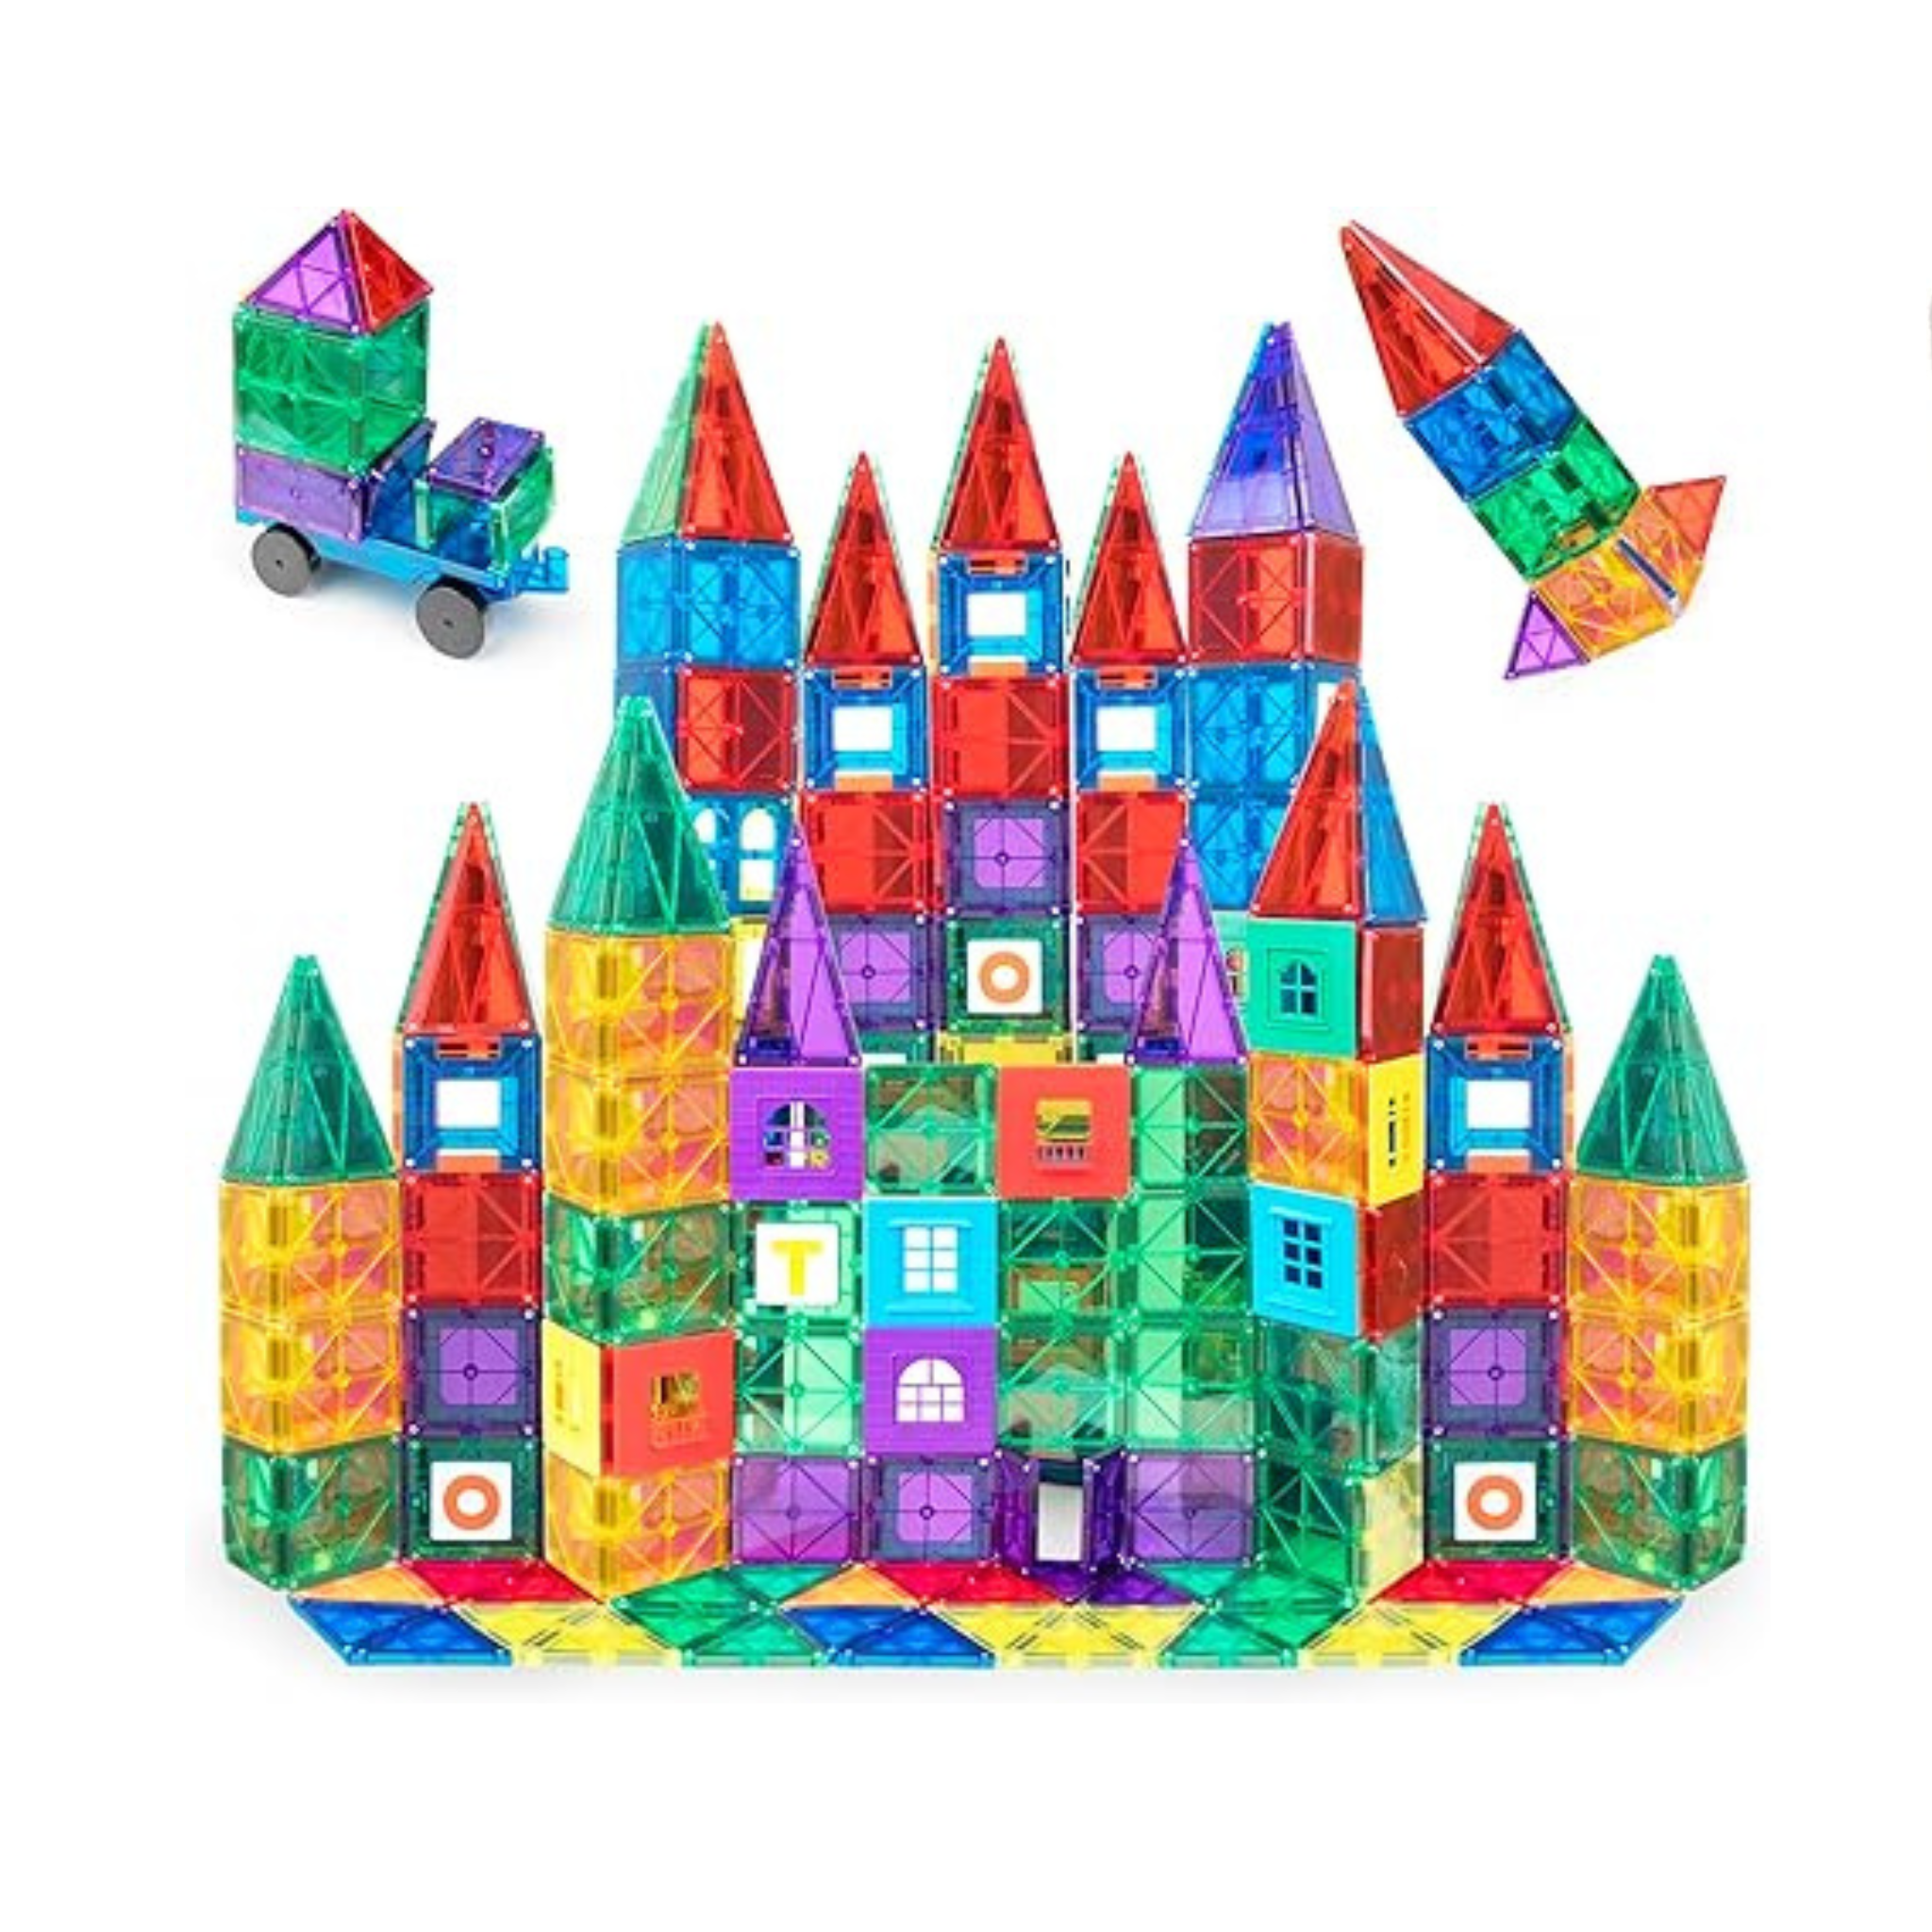 Playmags 150 Piece Magnet Building Tiles Set